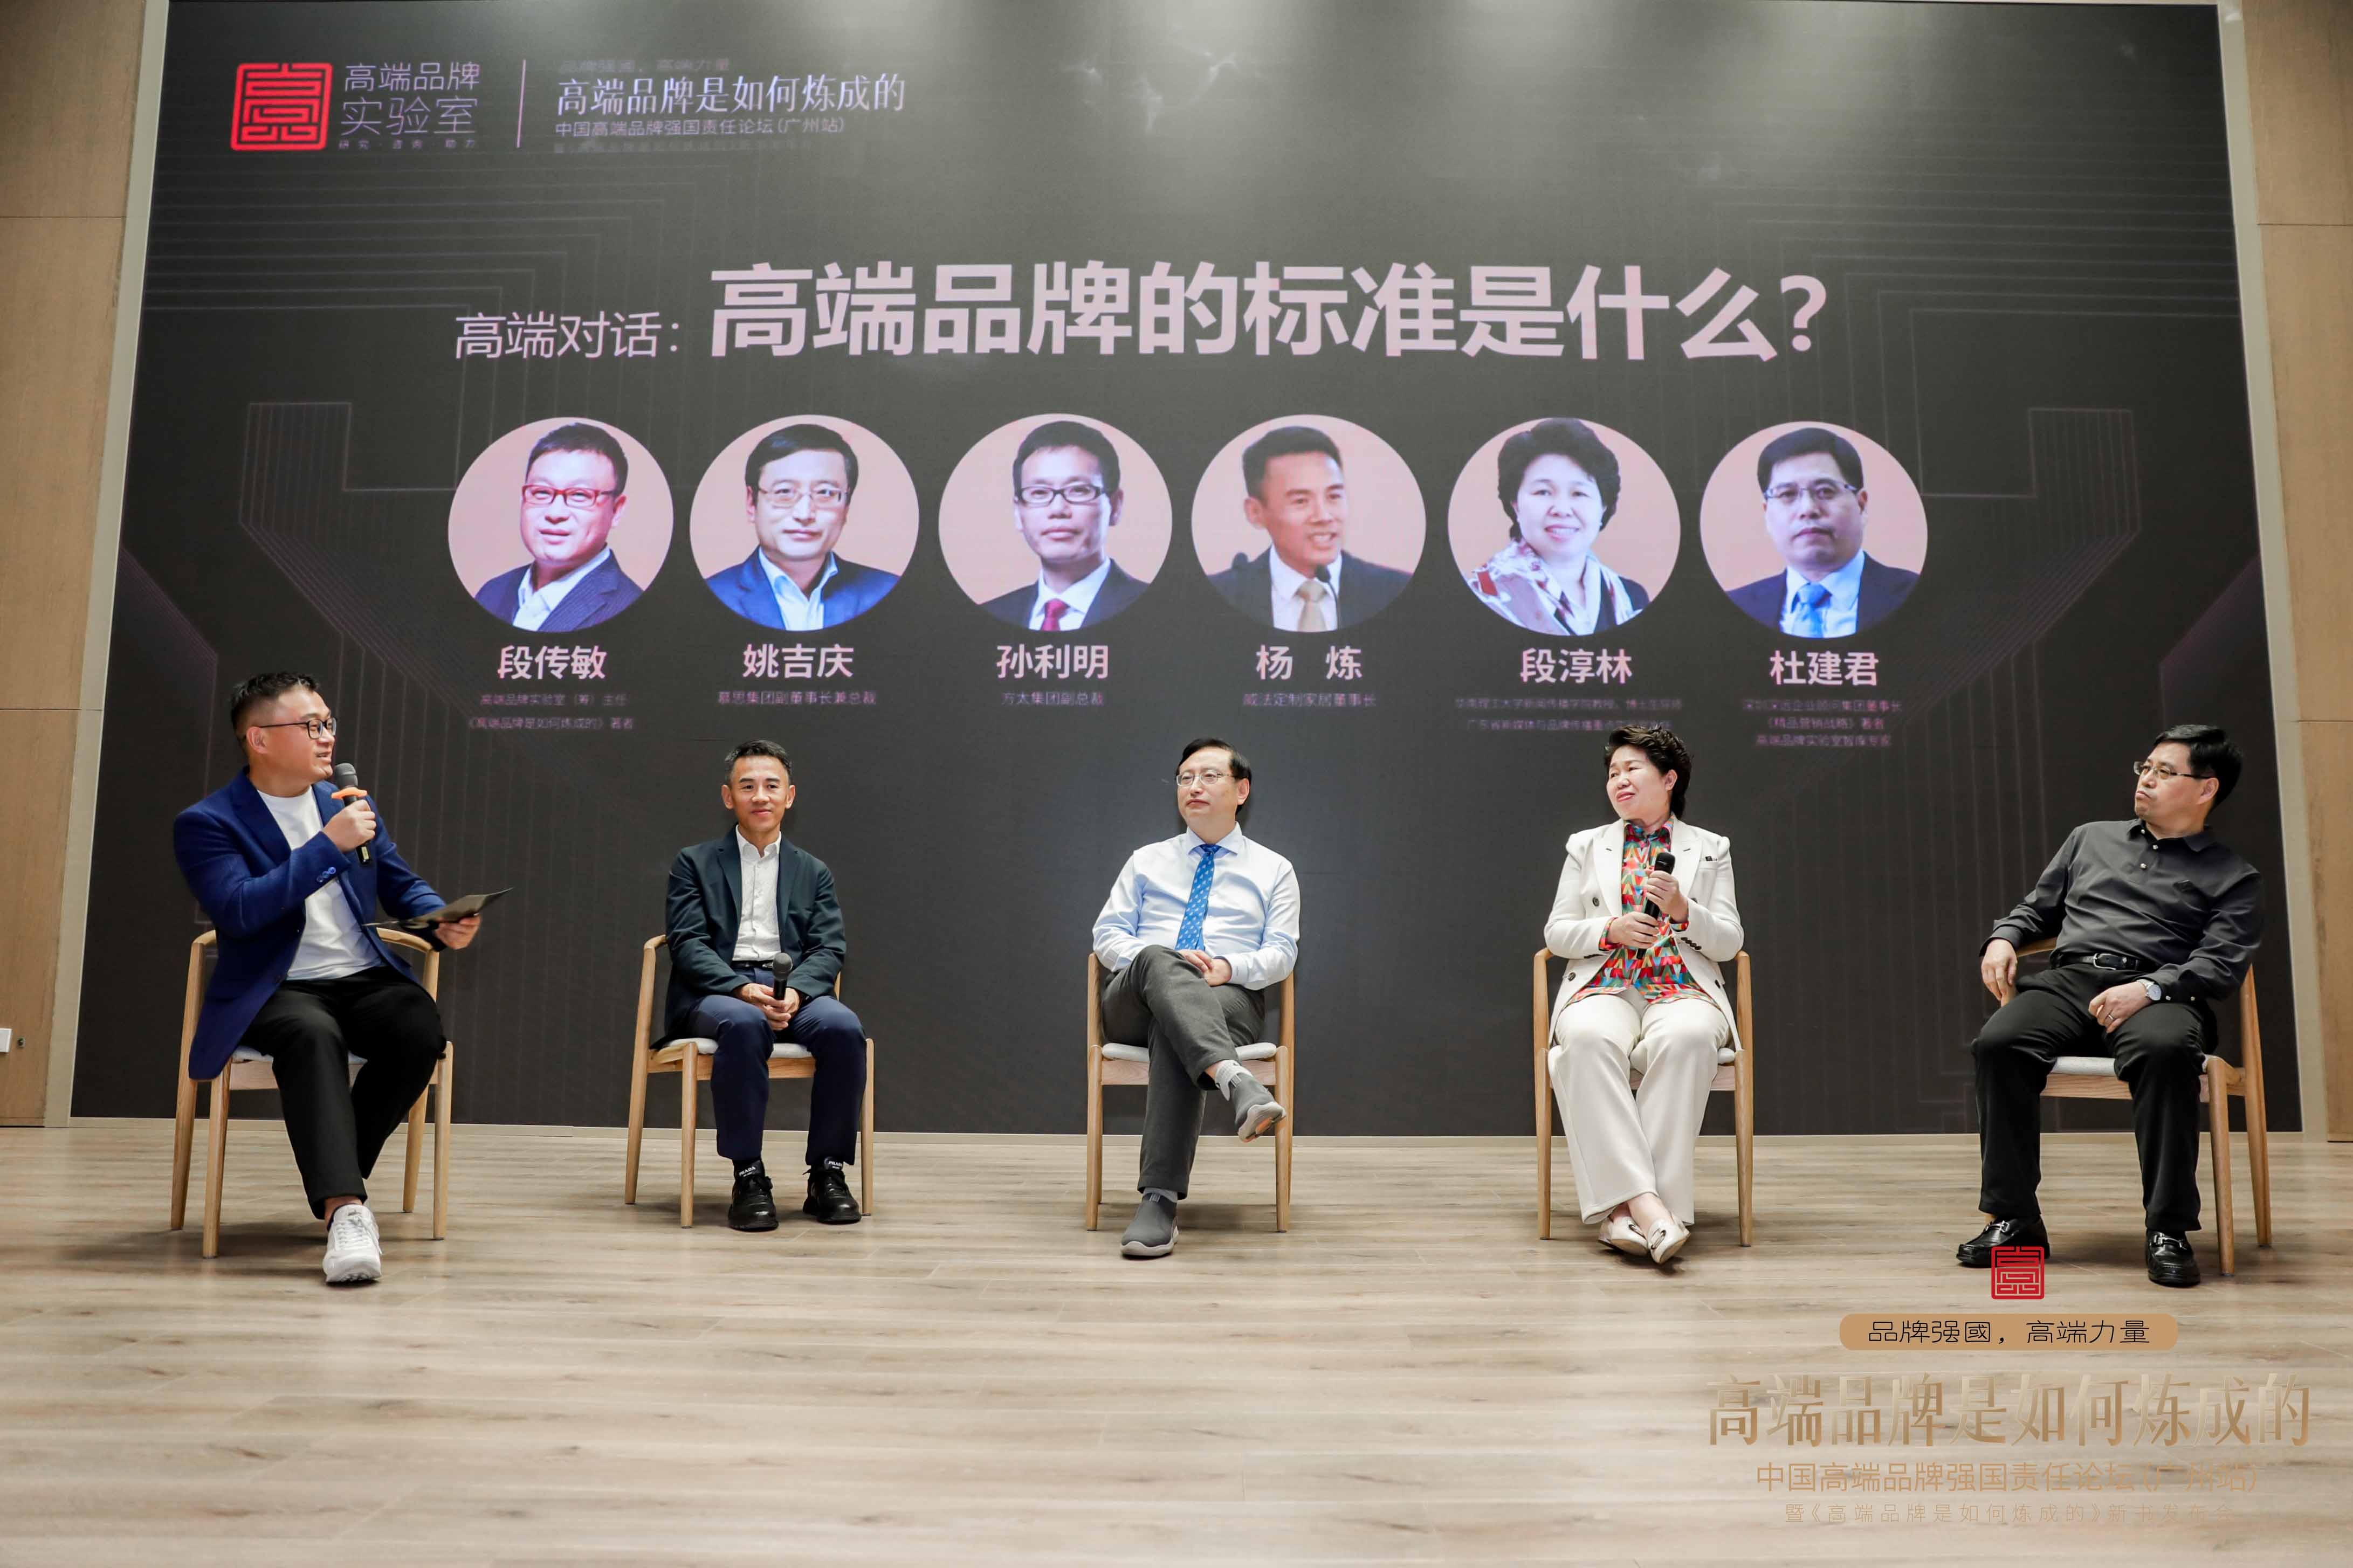 威法董事长杨炼出席中国高端品牌强国责任论坛 分享高端品牌打造要素